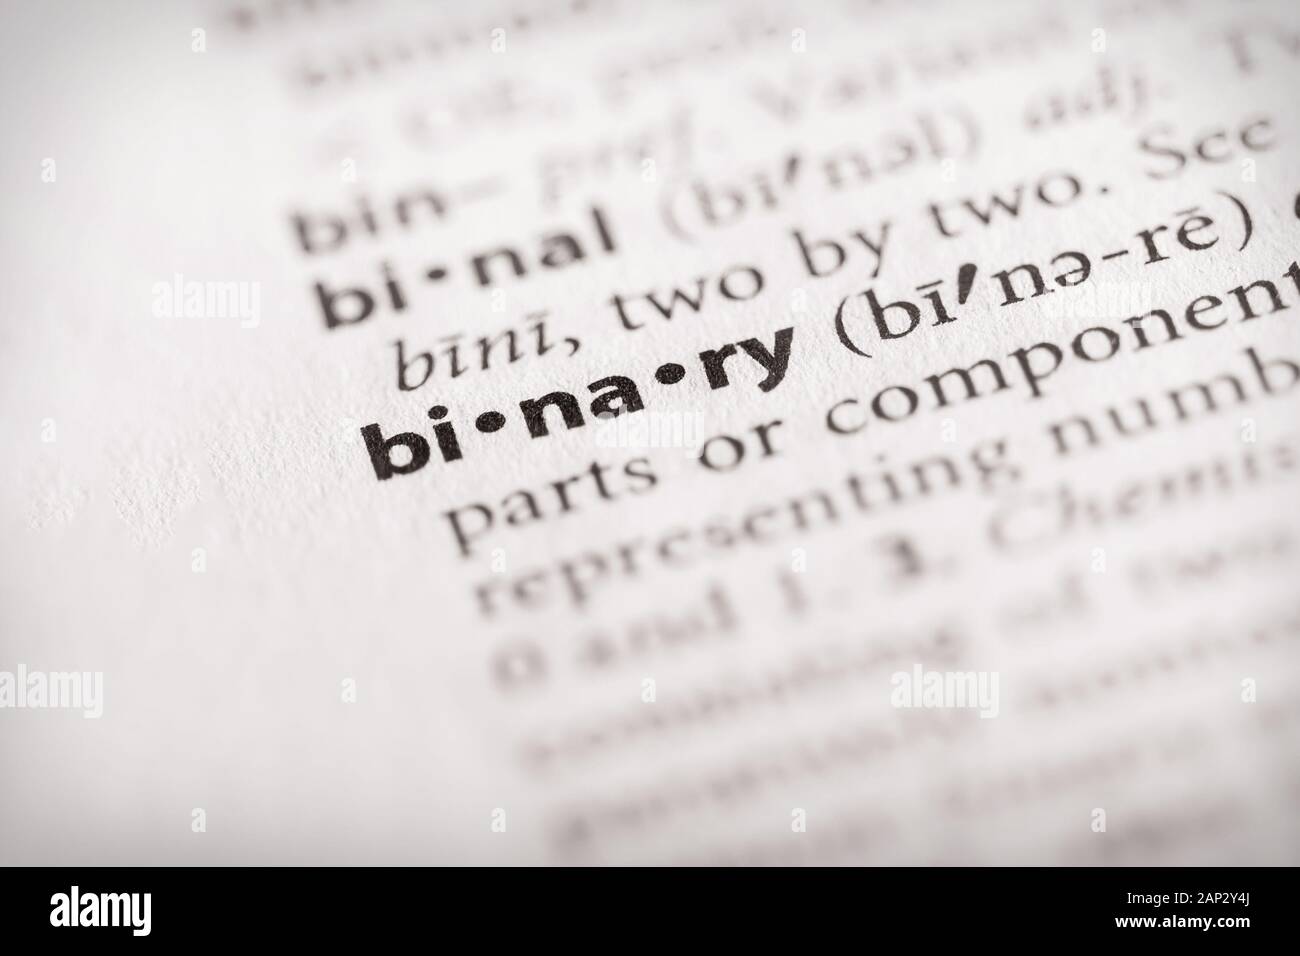 Selektive Fokussierung auf das Wort binär. Viele weitere Wortfotos in meinem Portfolio. Stockfoto